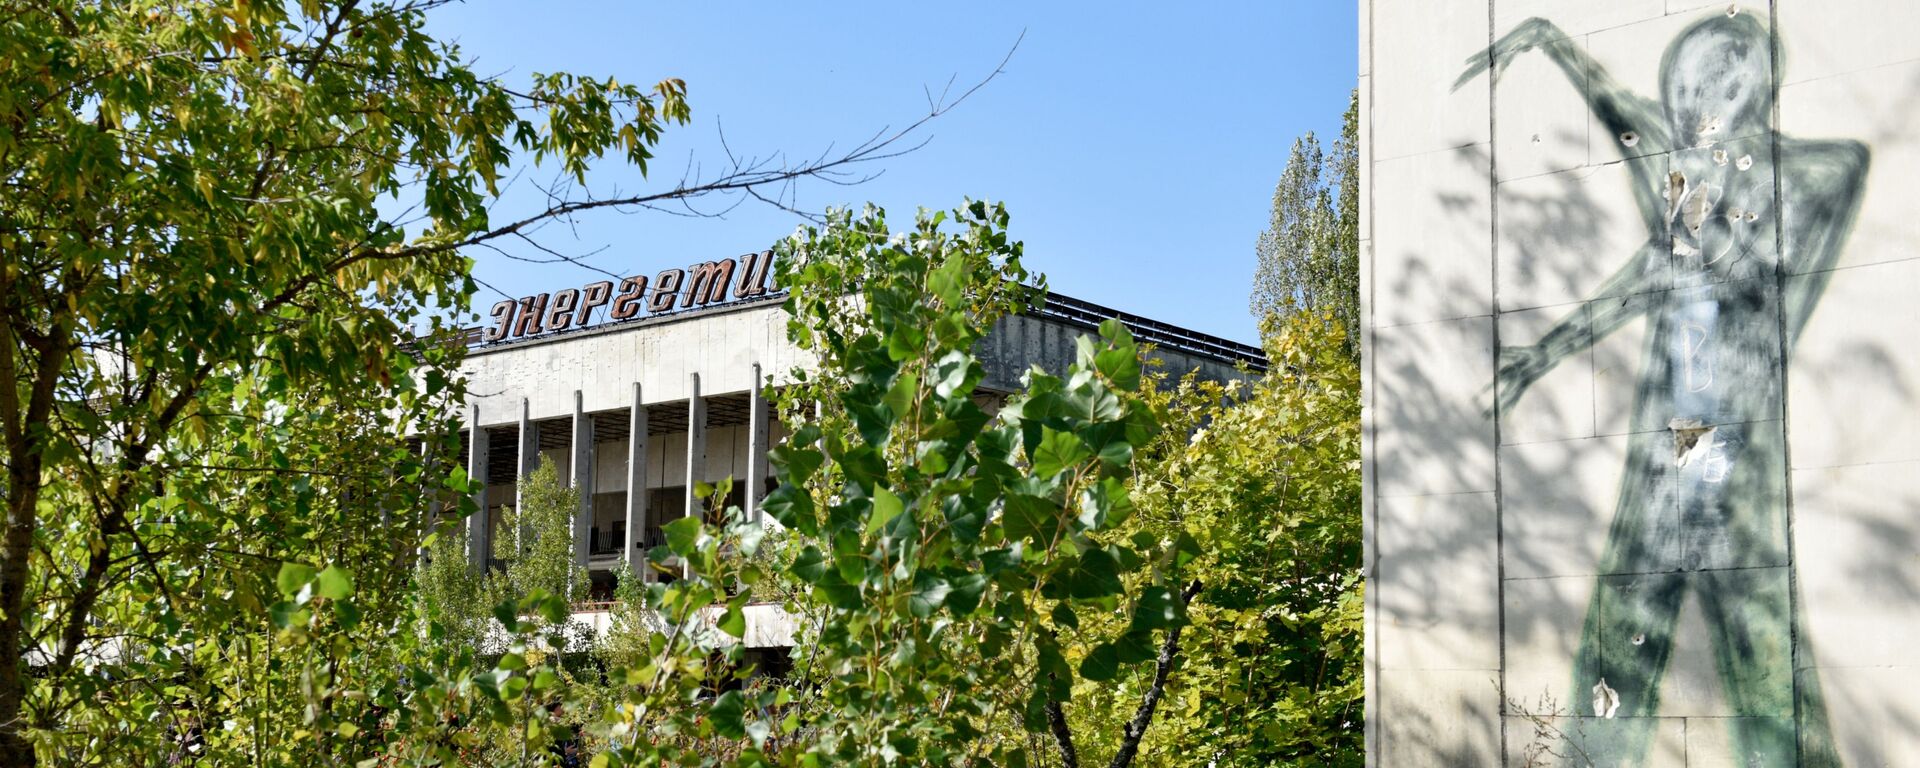 Buvę kultūros rūmai Energetik Černobylio atominės elektrinės atskirimo zonoje - Sputnik Lietuva, 1920, 03.02.2022